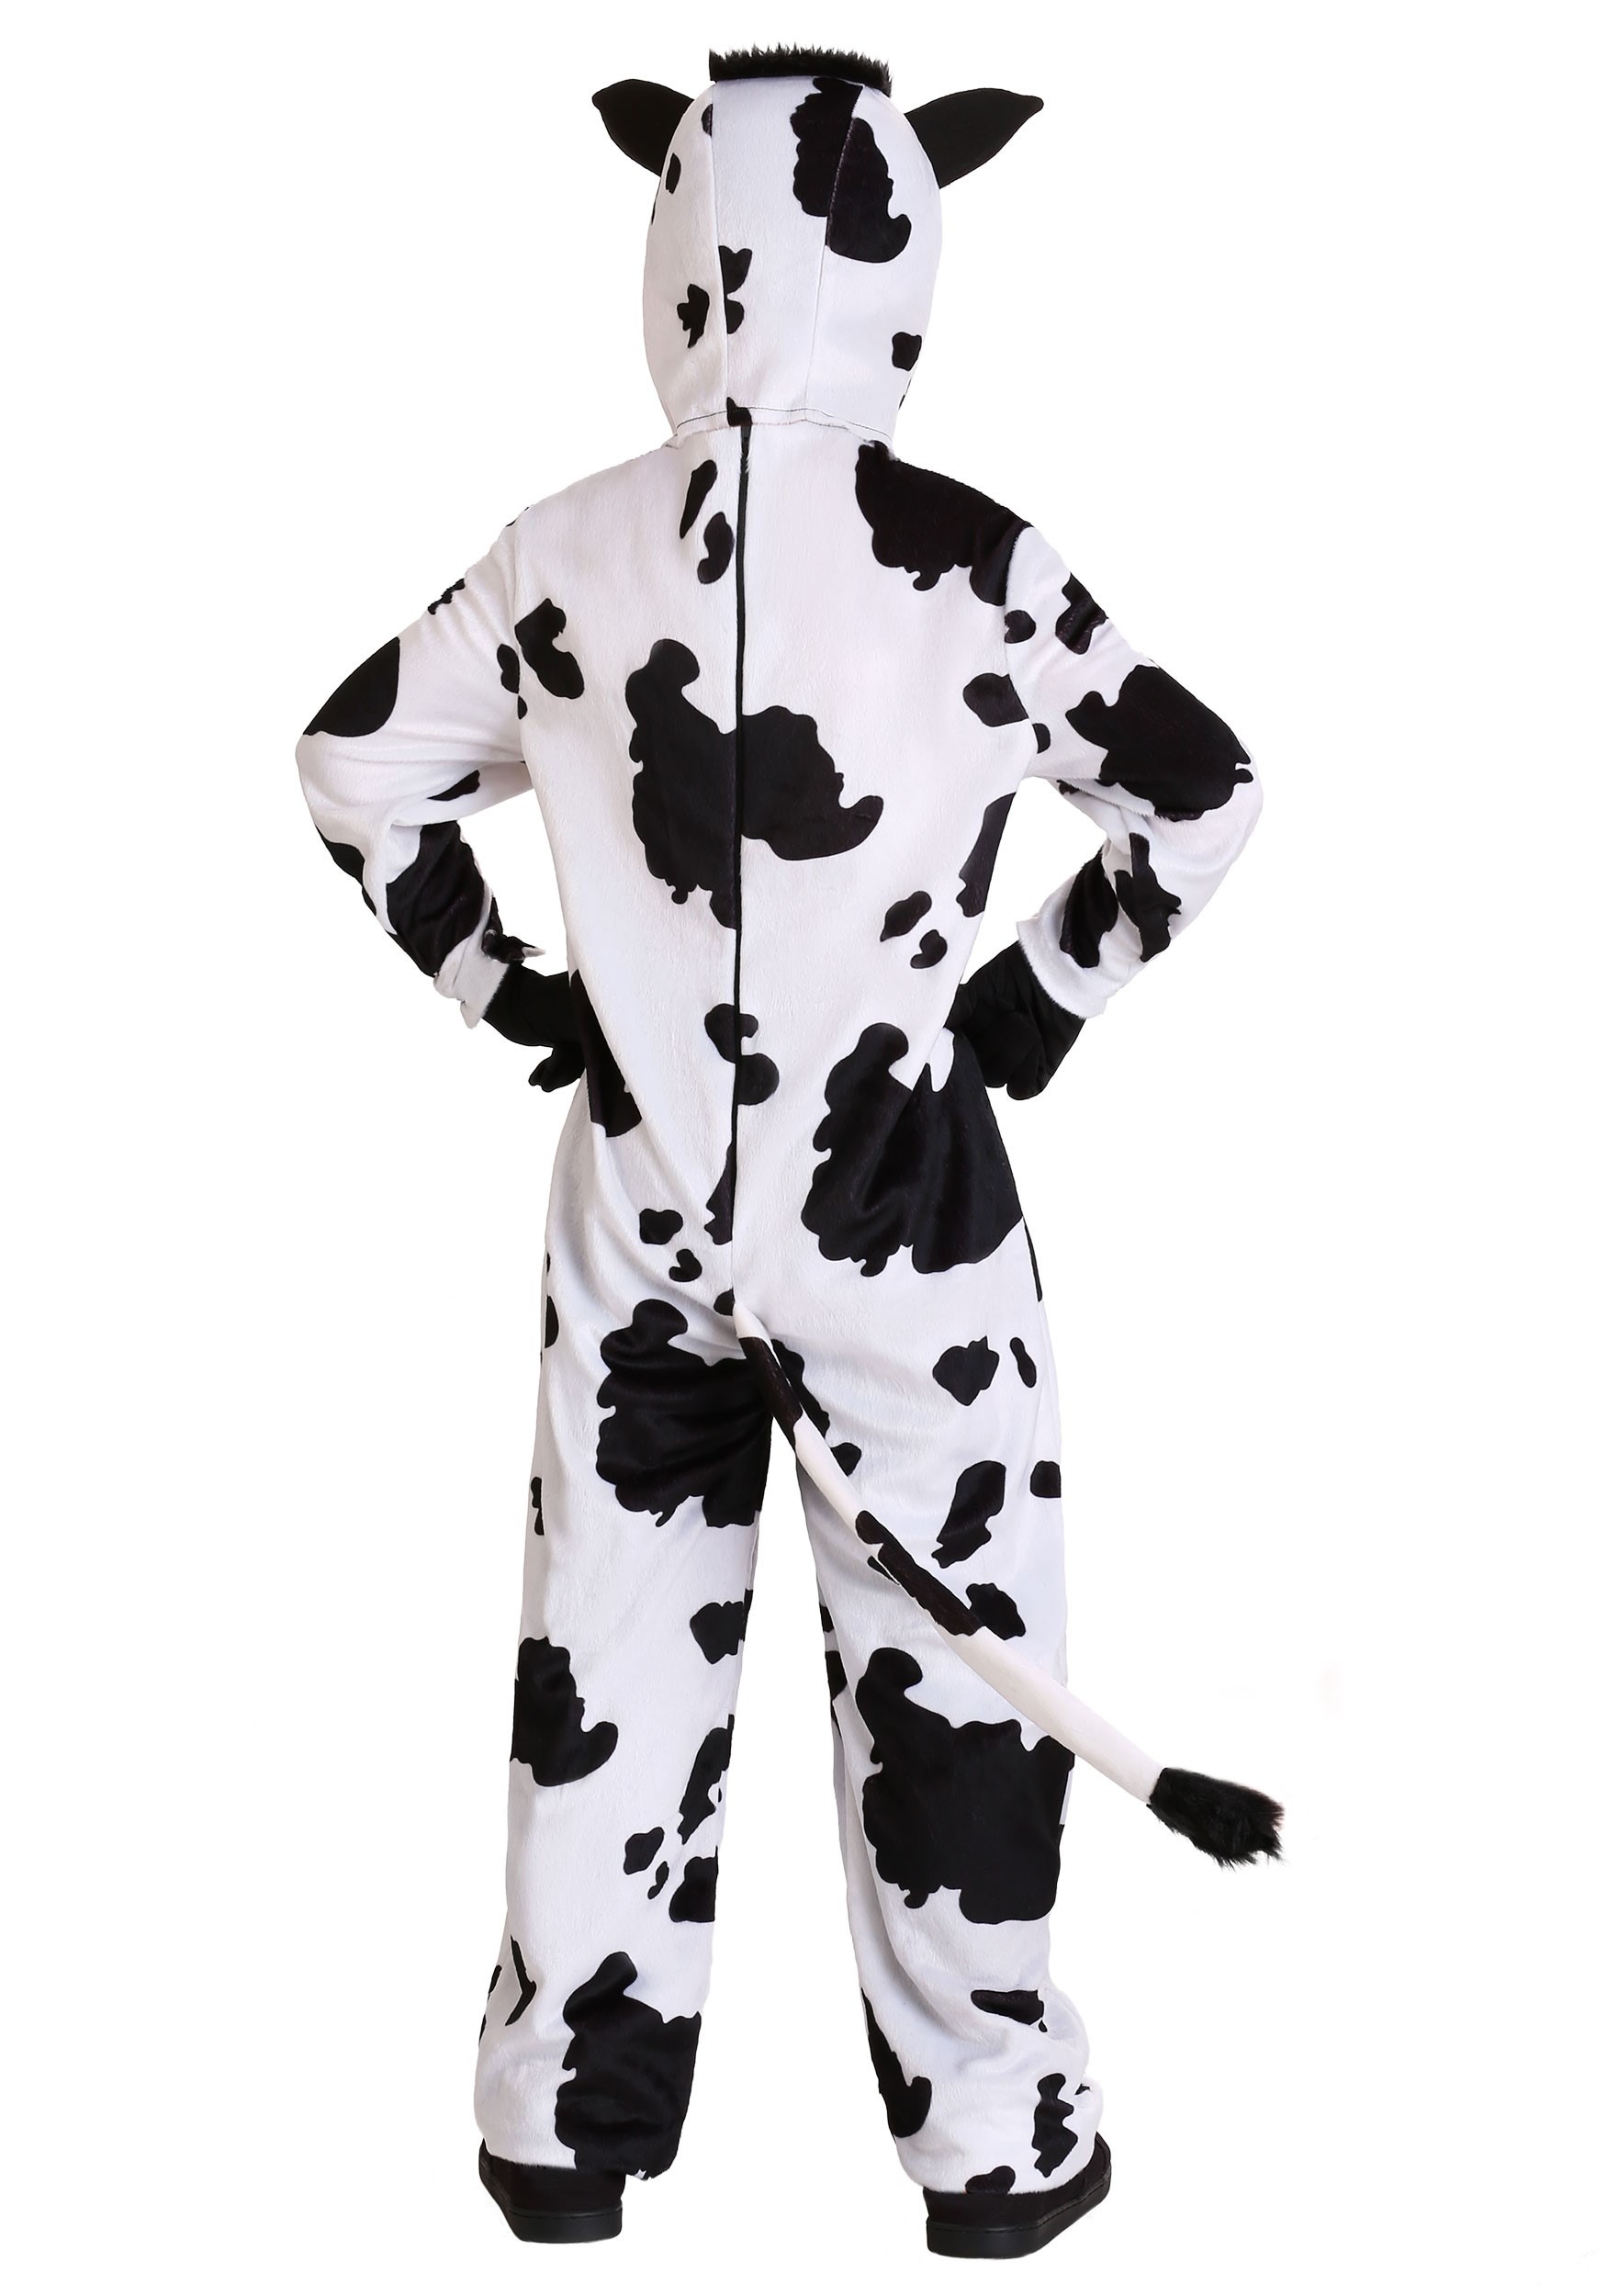 Kid's Cow Costume